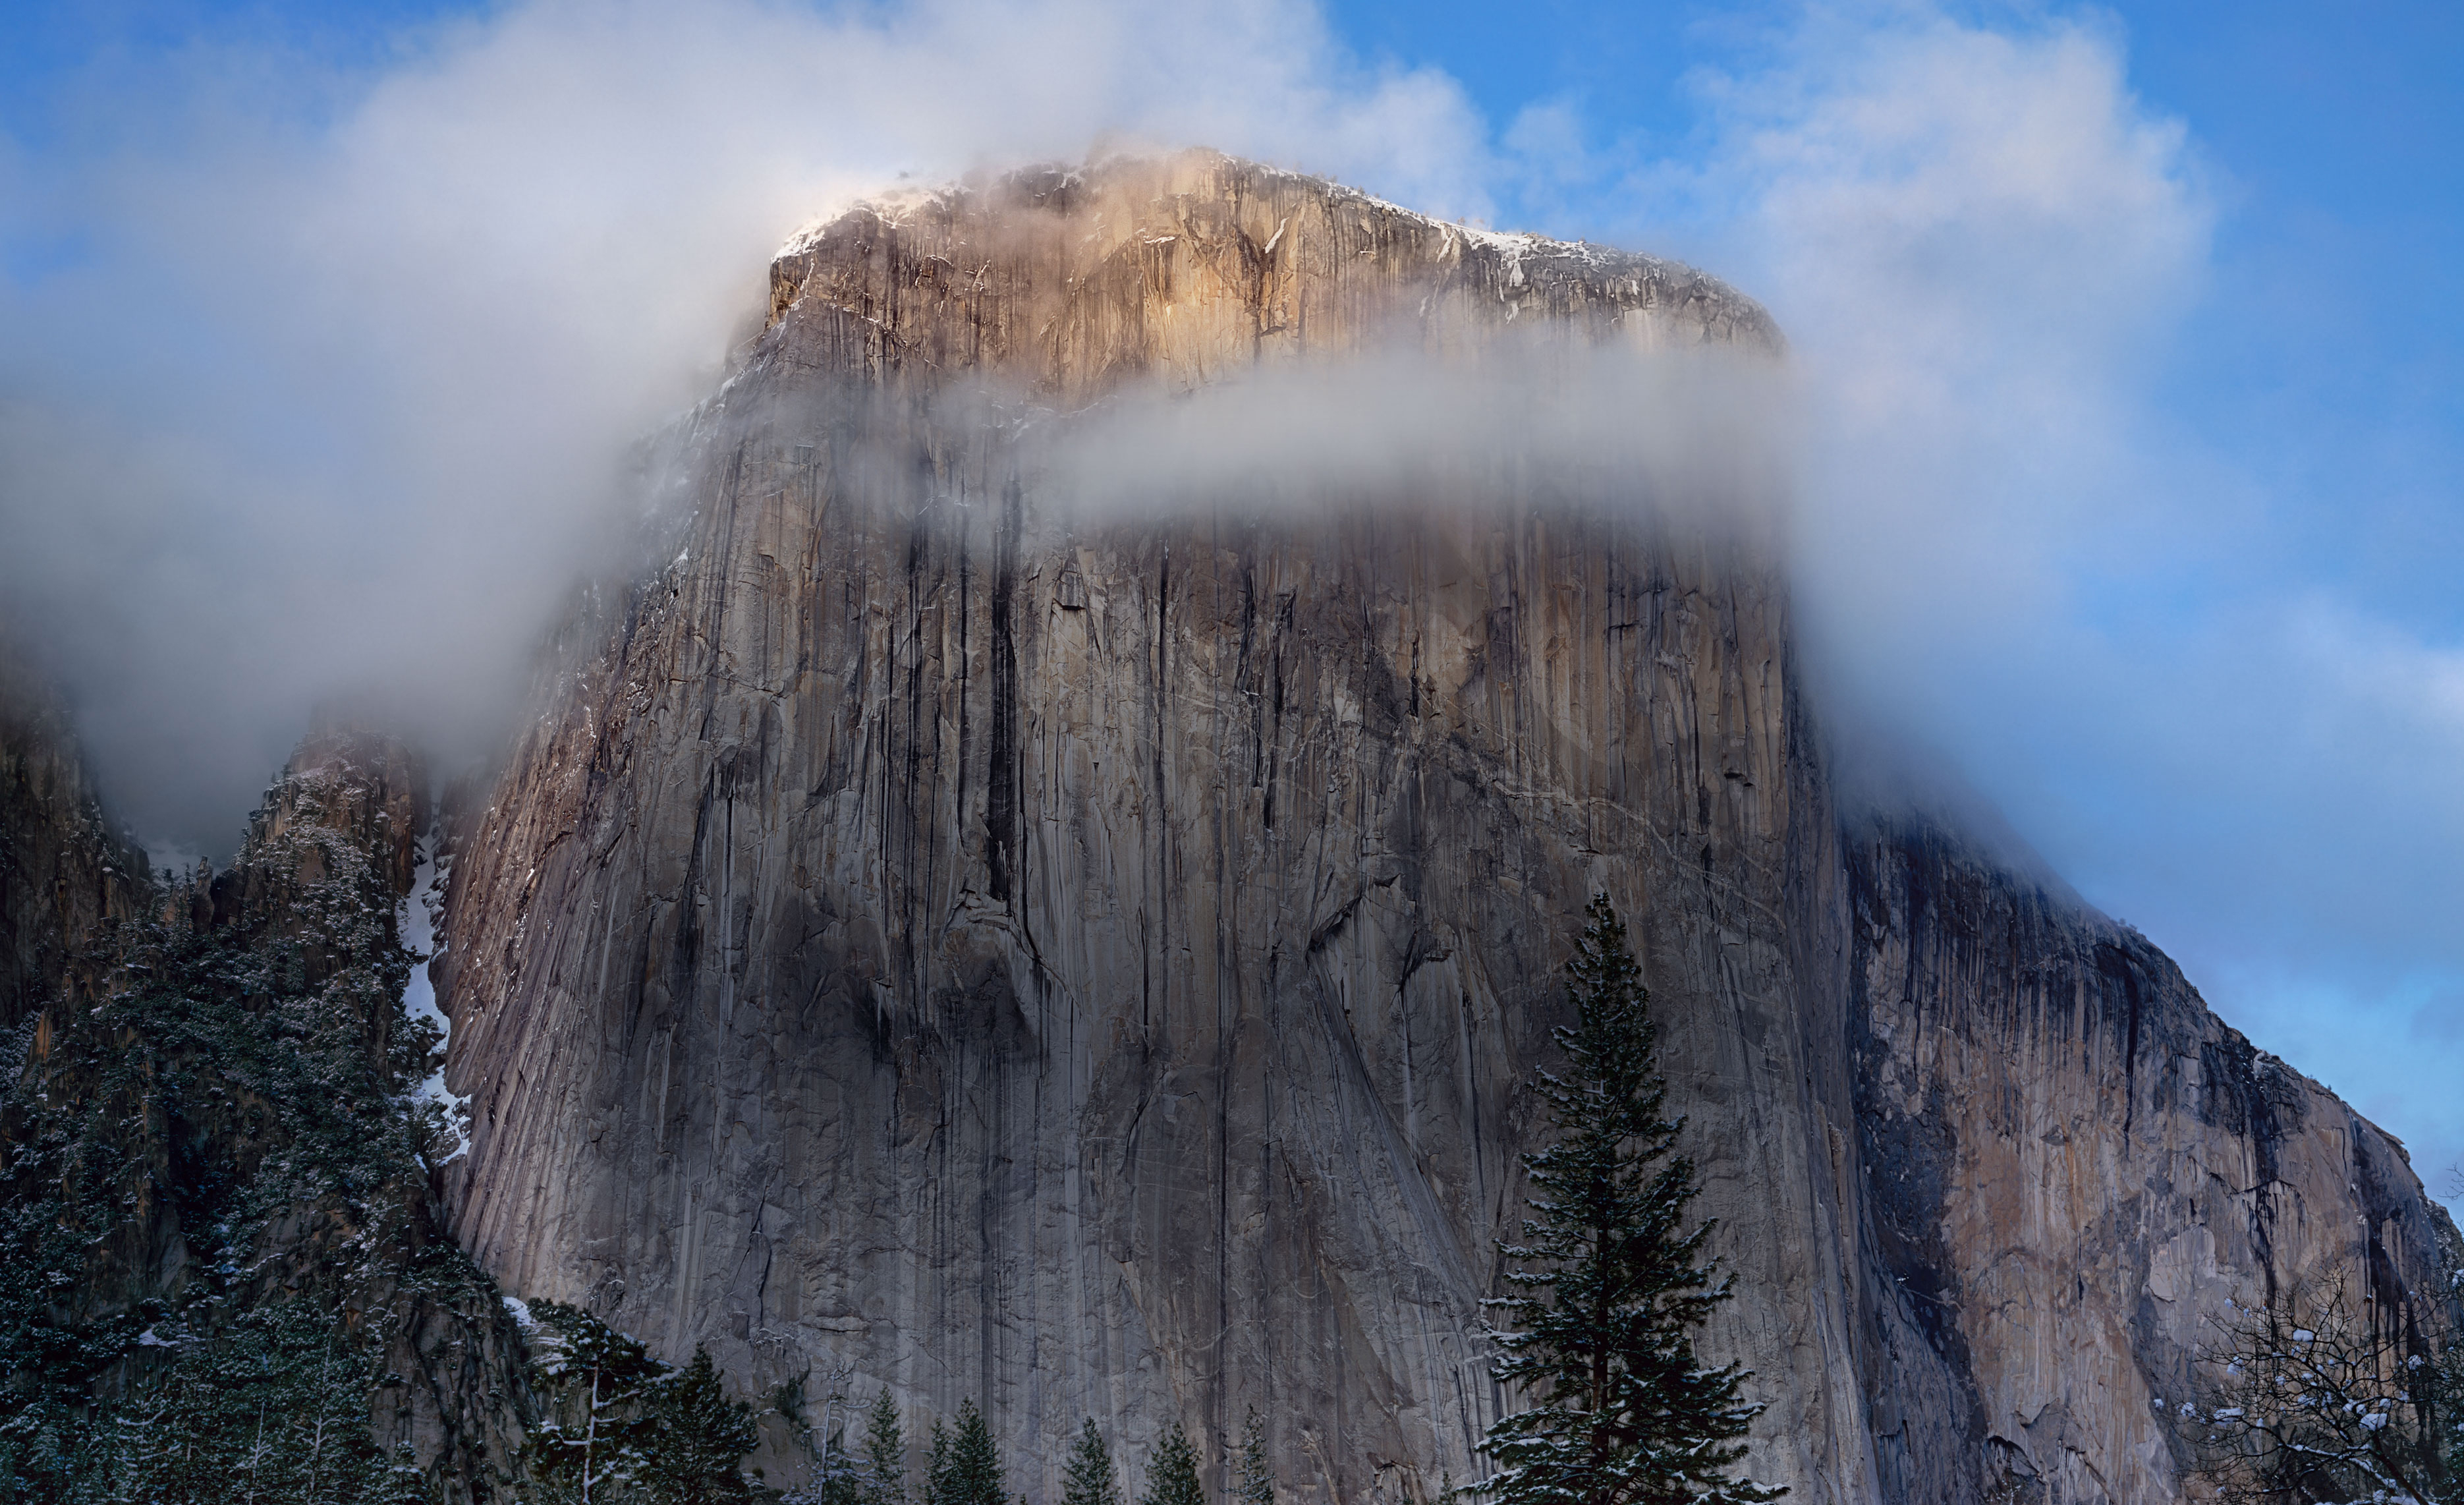 Download Mac Os Yosemite On Pc